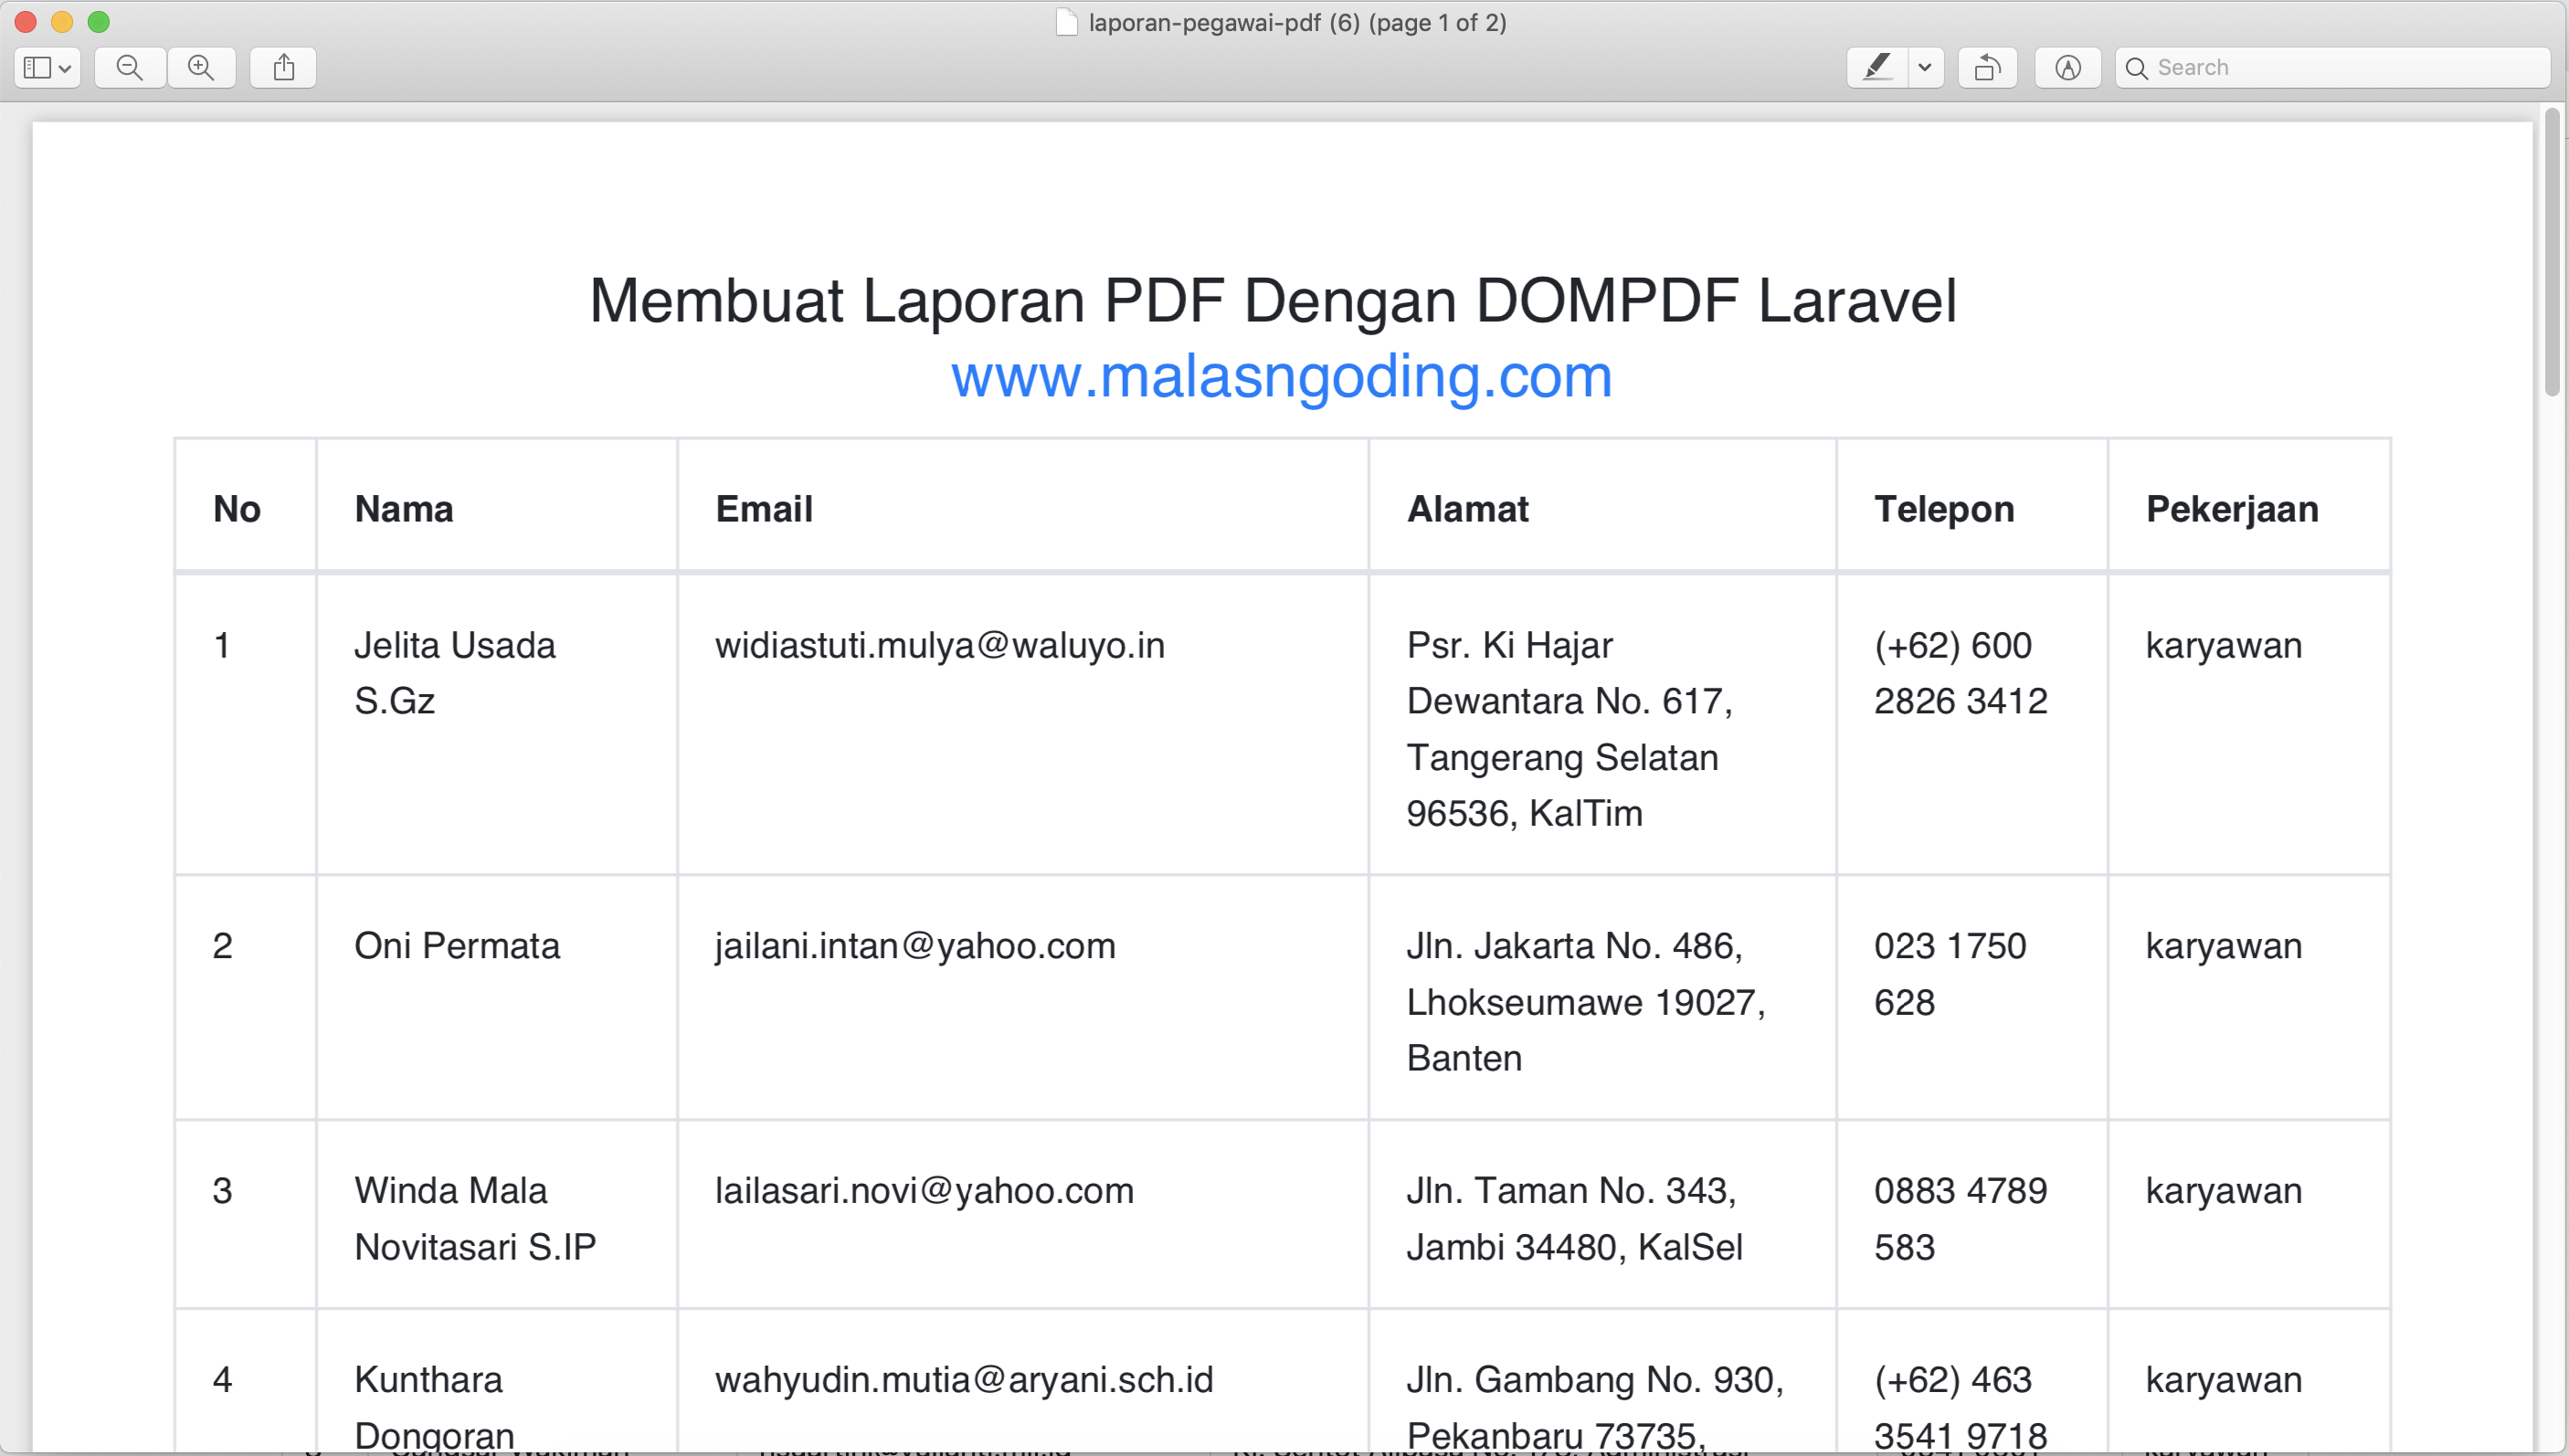 Membuat Laporan PDF Dengan DOMPDF Laravel